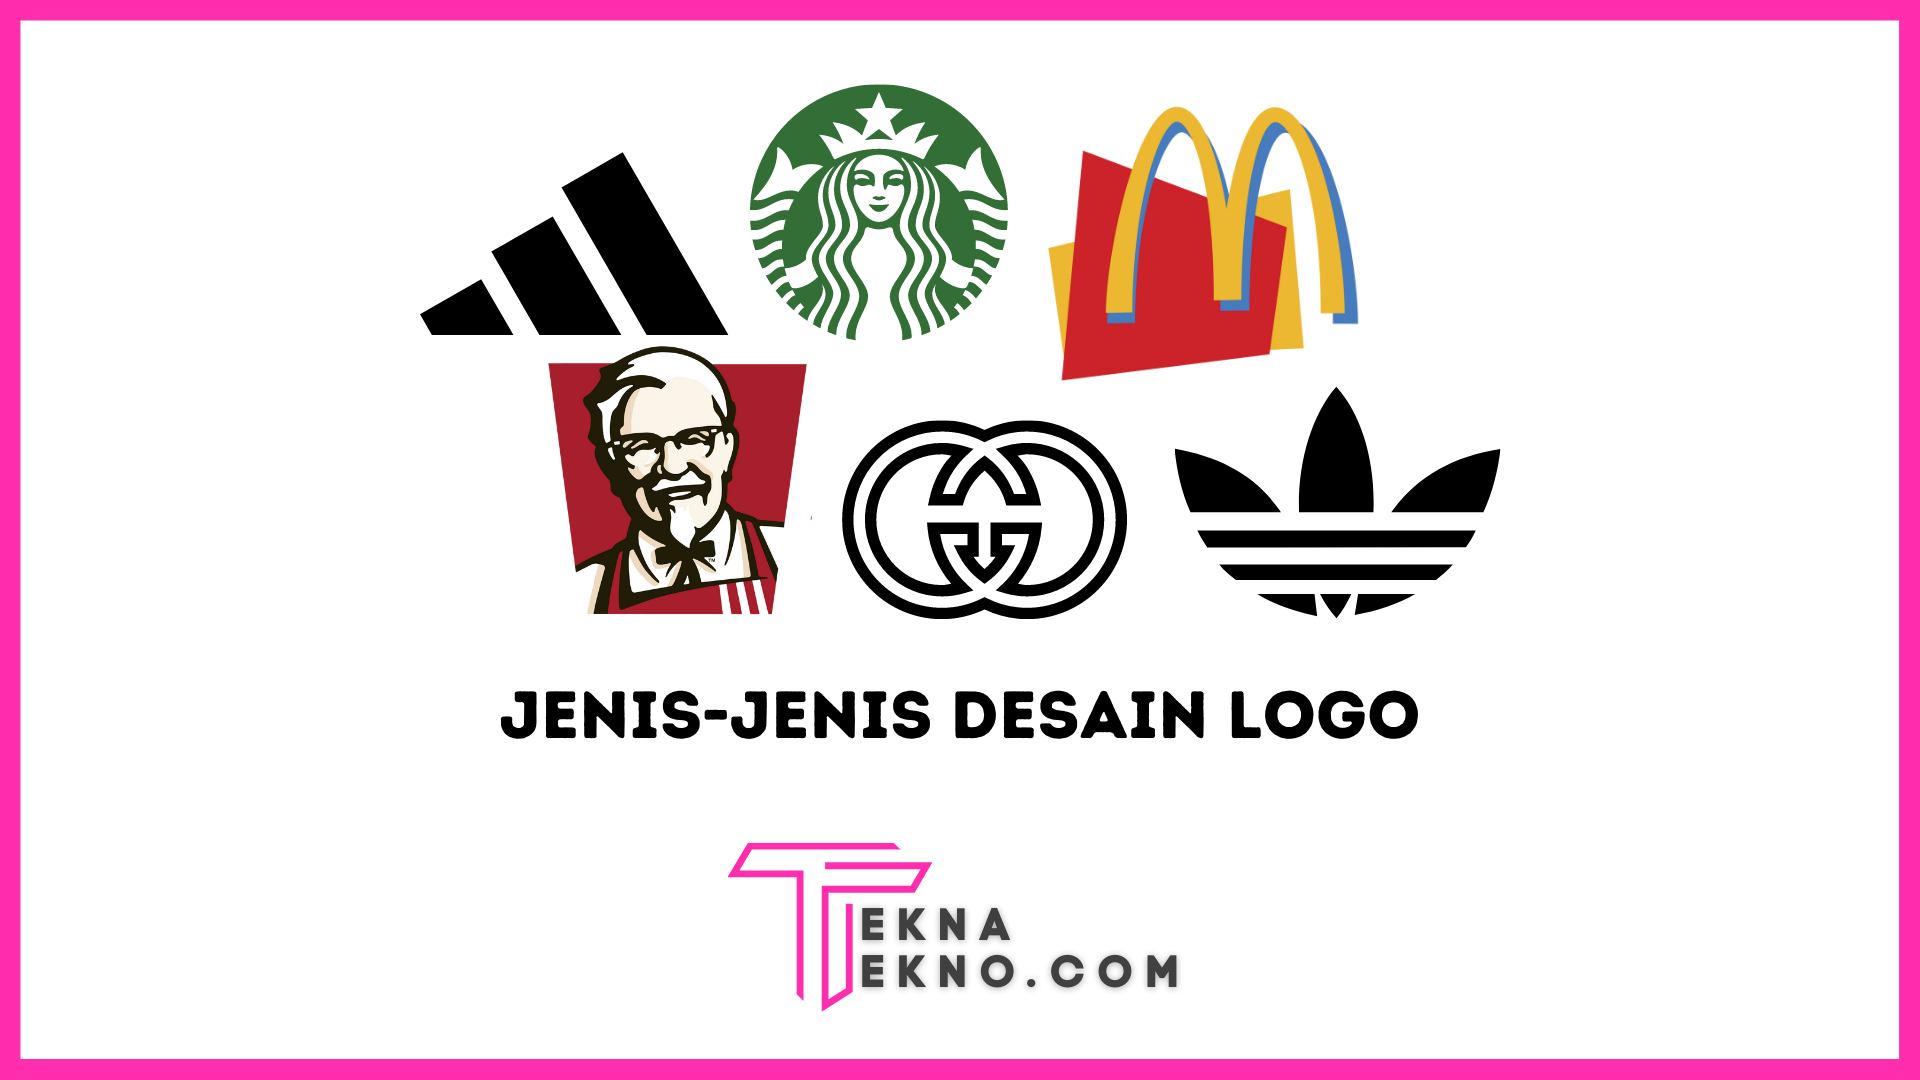 7 Jenis Desain Logo yang Cocok untuk Bisnis Online